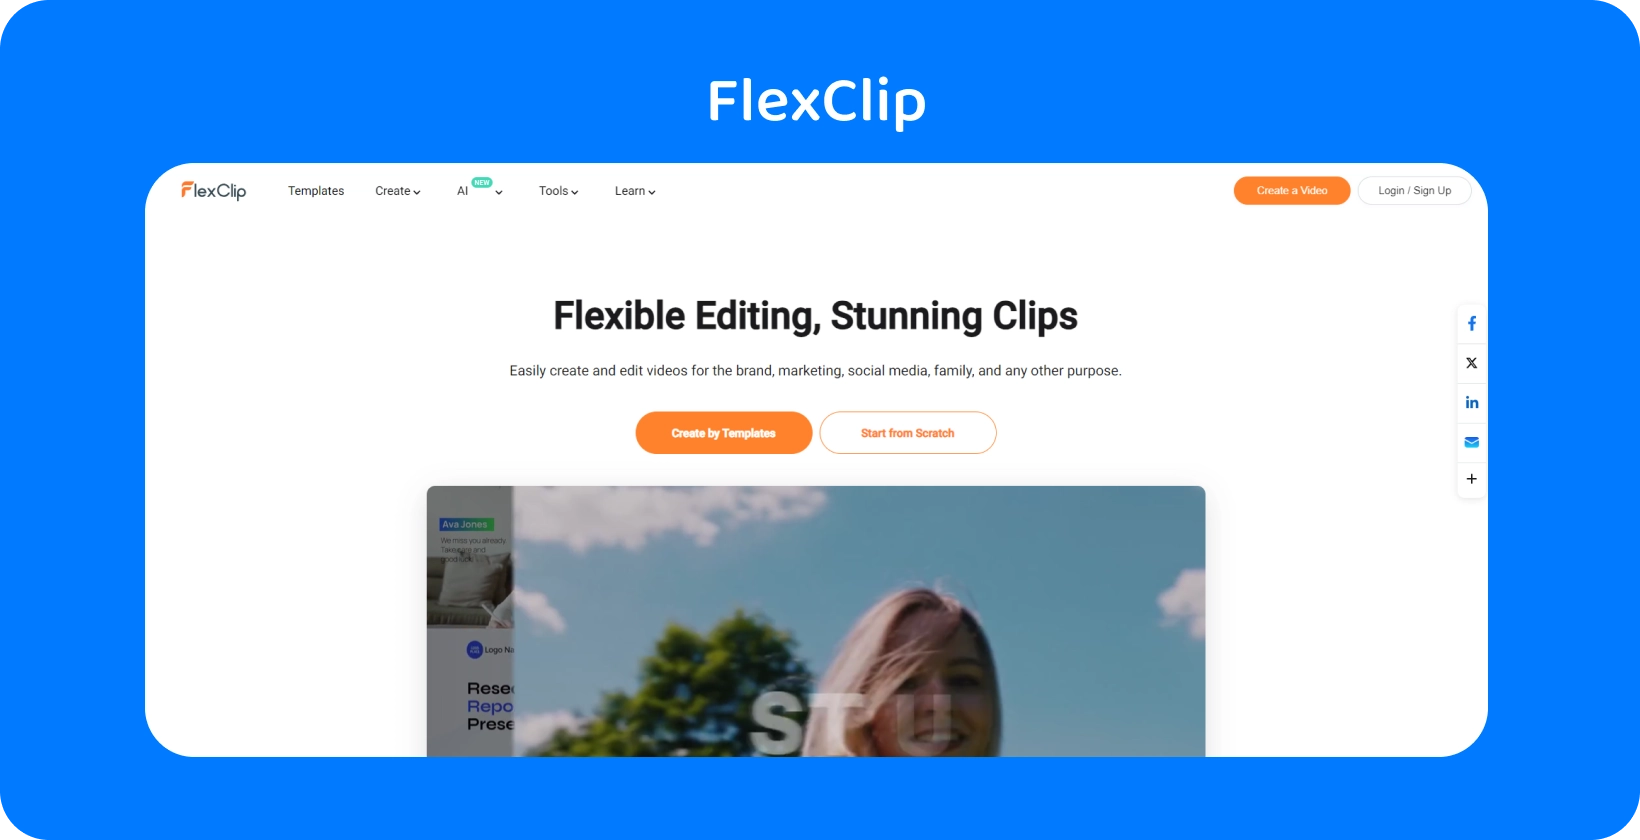 FlexClip का टेक्स्ट टू स्पीच वीडियो मेकर इंटरफ़ेस टेक्स्ट को यथार्थवादी AI भाषण में बदलने का एक सरल और कुशल तरीका दिखाता है।